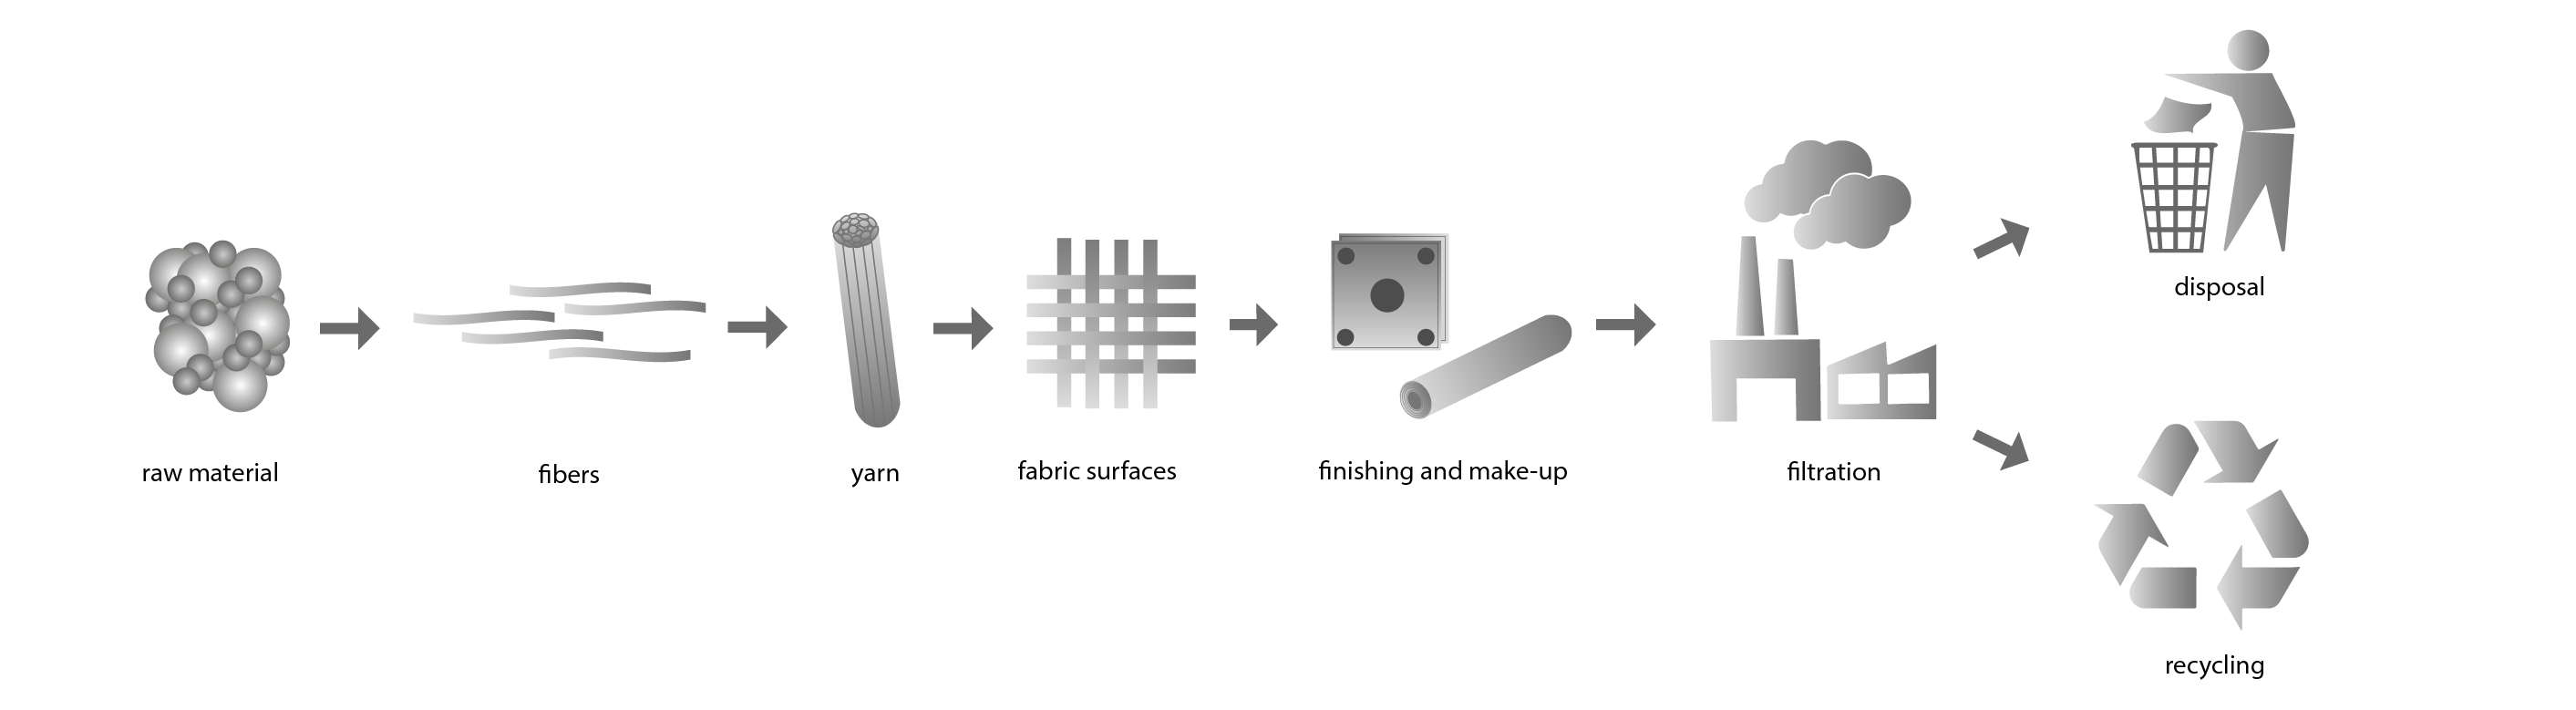 R+F Filterelements GmbH_textile fibers_process diagram textile chain_graphic